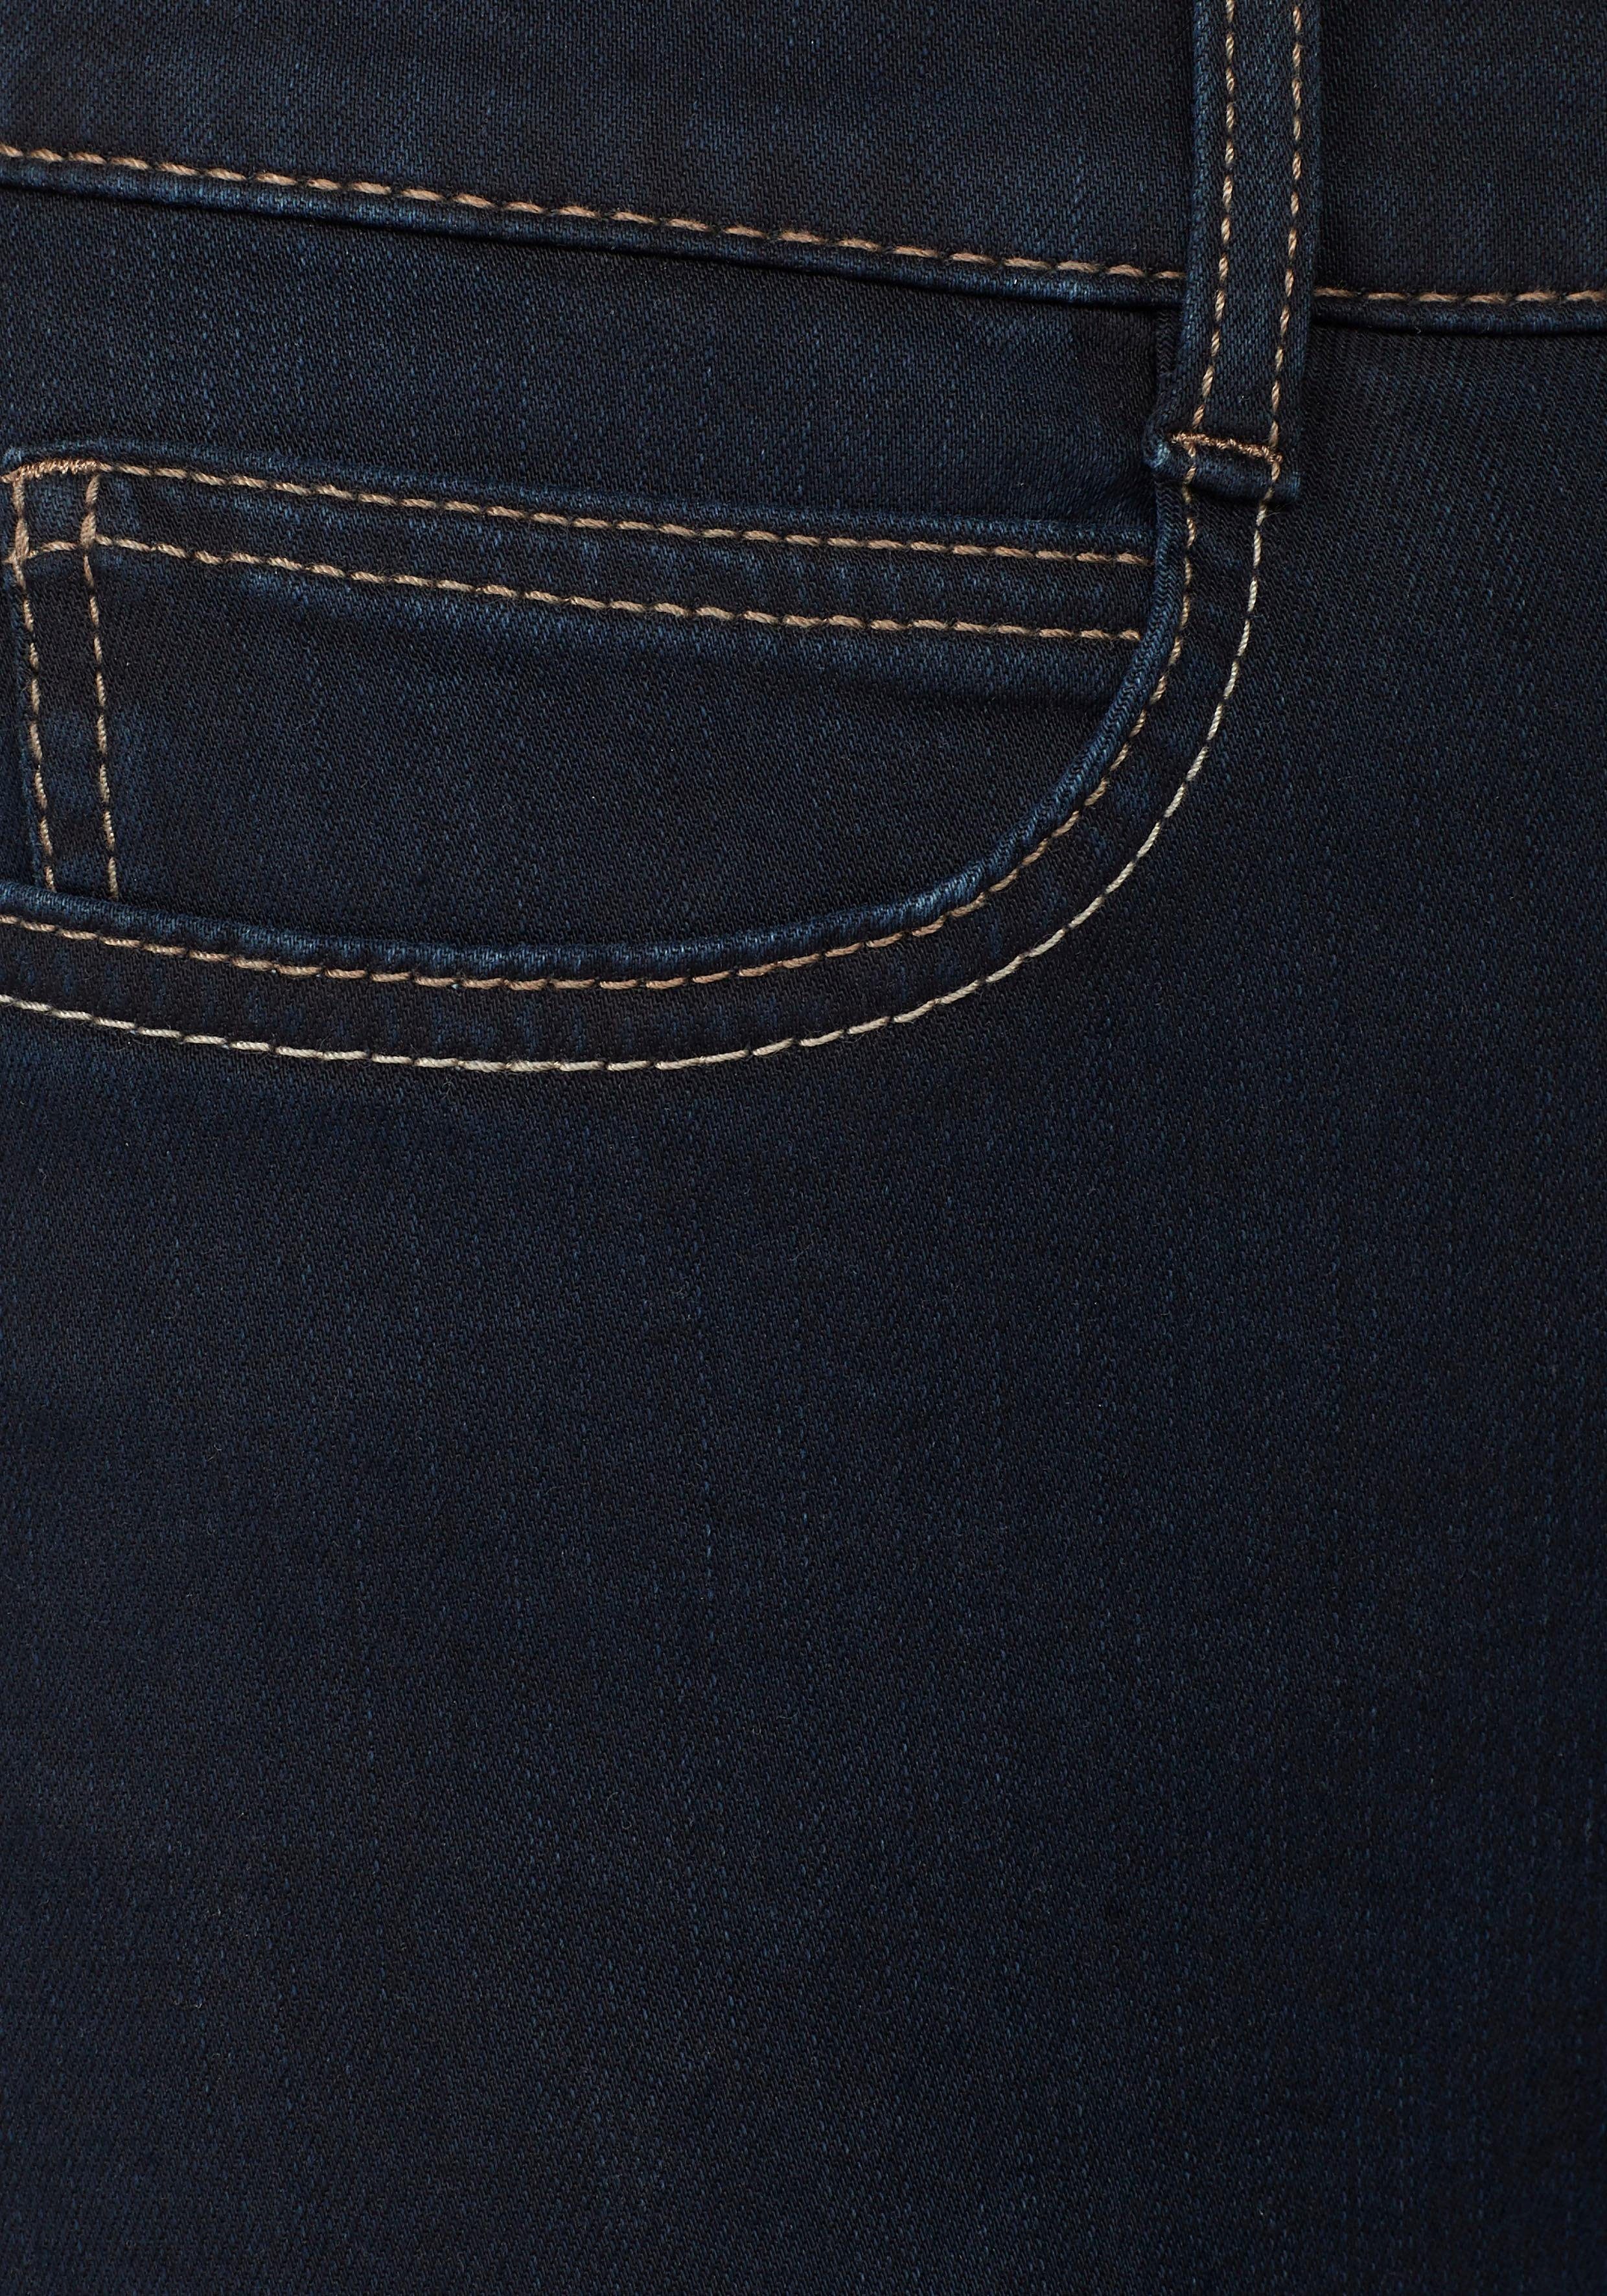 dark 5-Pocket-Jeans Angela rinsed blue Die MAC Schmale